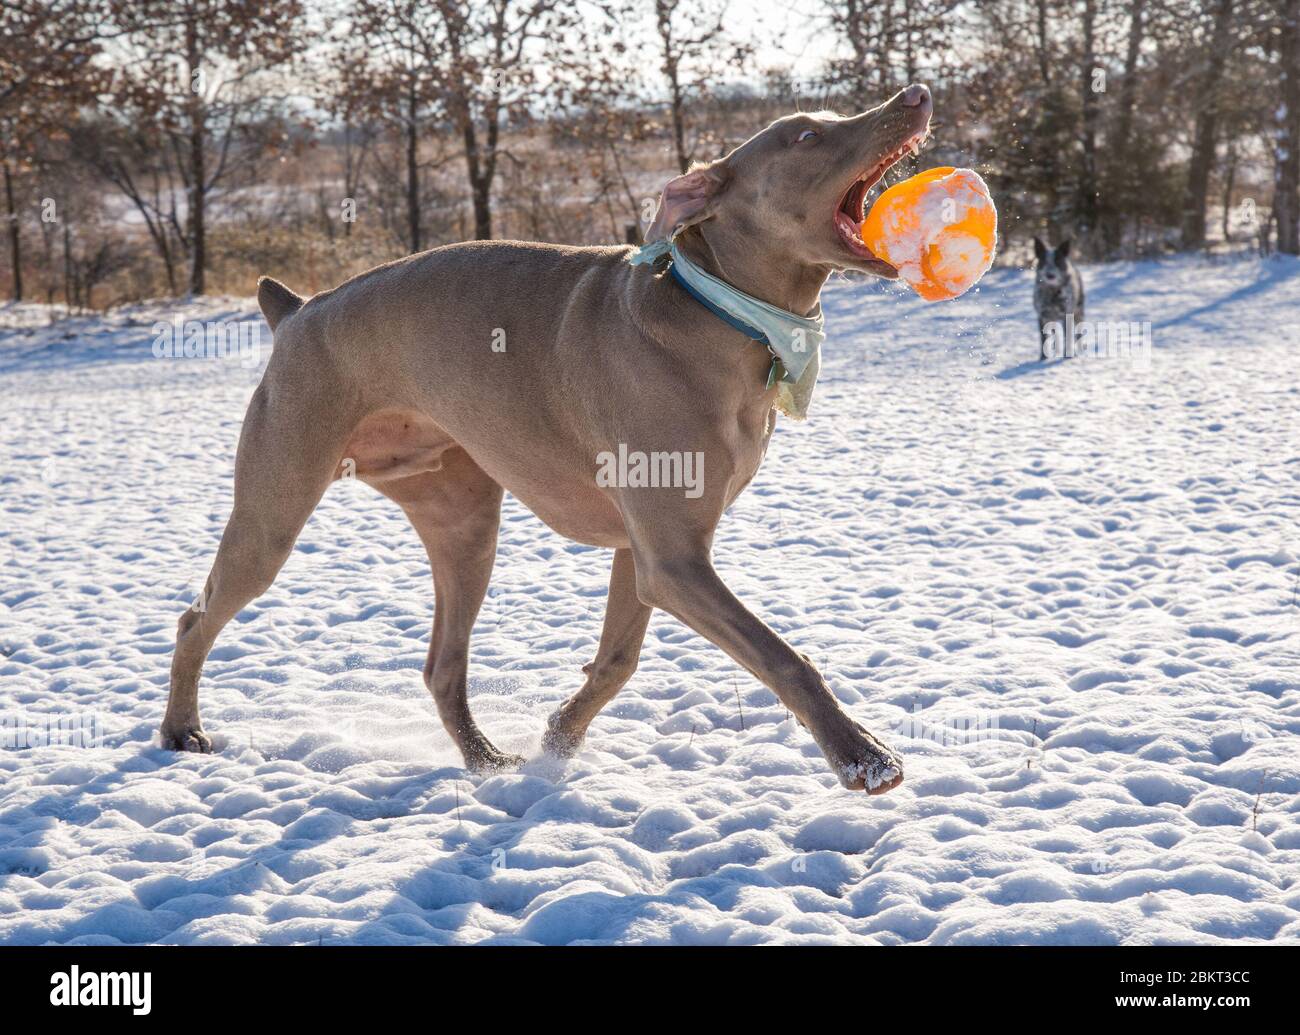 Le chien Weimaraner lance une balle dans l'air pendant qu'il court, dans une scène hivernale enneigée, contre-éclairée par le soleil Banque D'Images